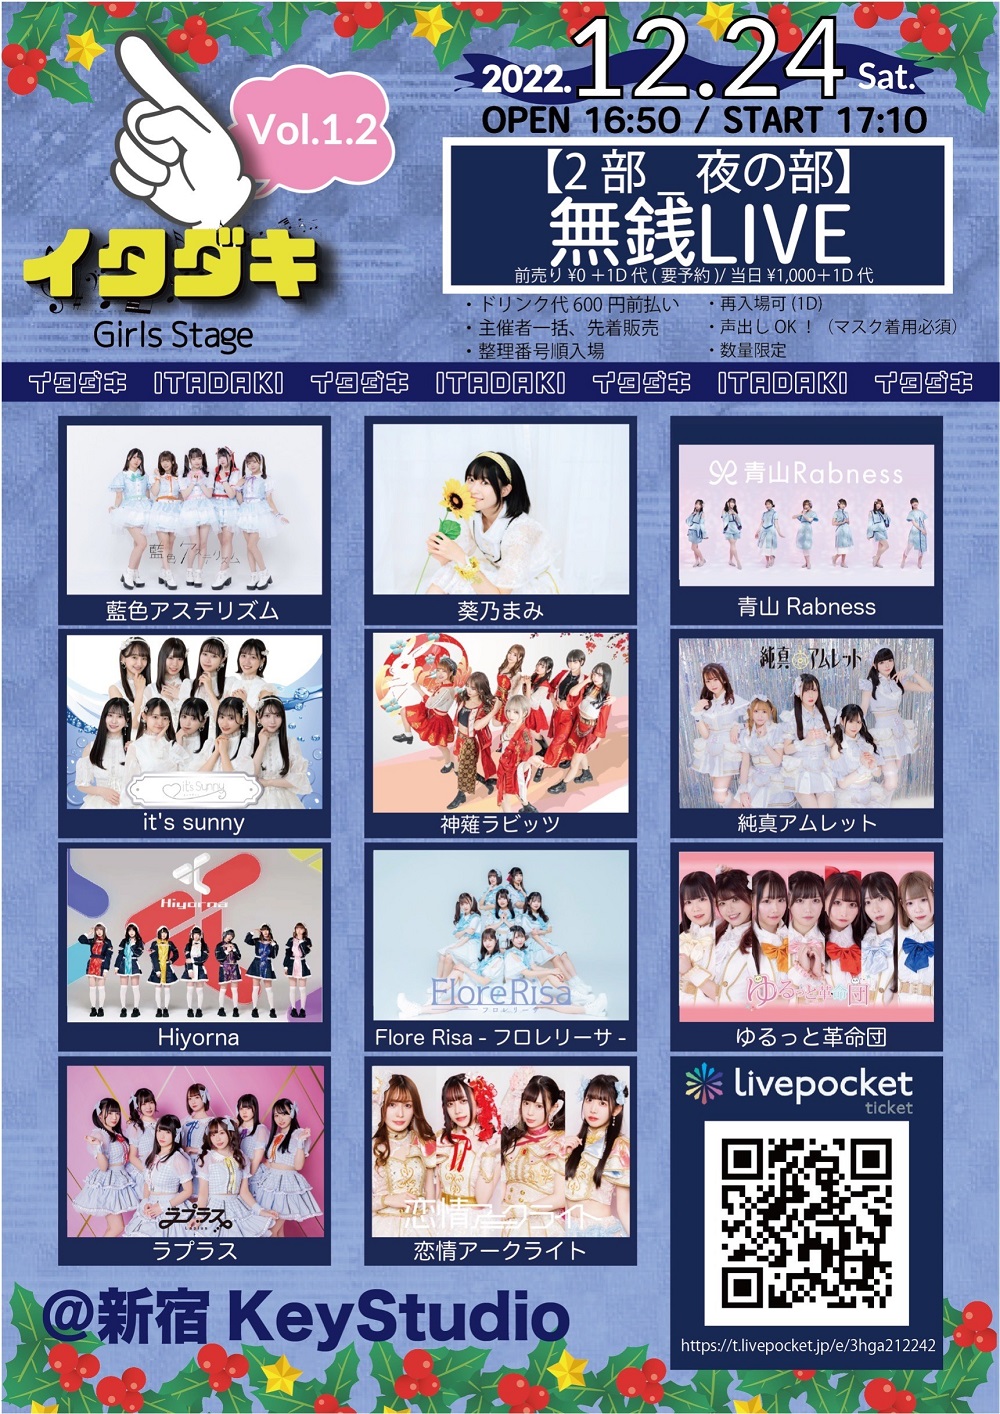 「イタダキ Vol.1 girls stage 無銭LIVE」2部